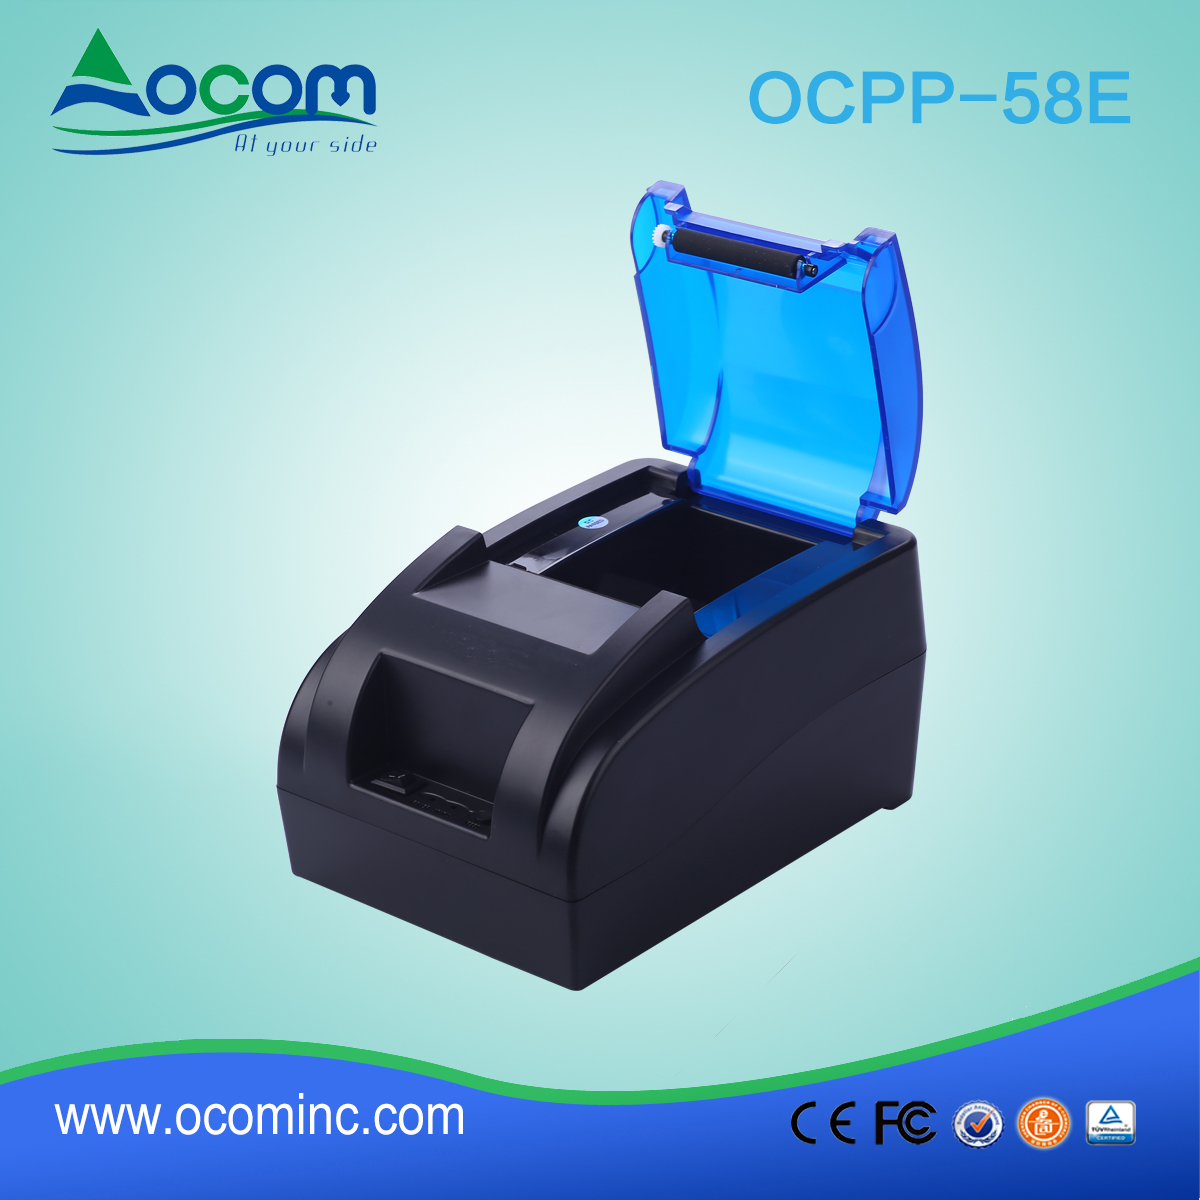 ОКПП-58е — тепловой принтер для малого 58мм POS